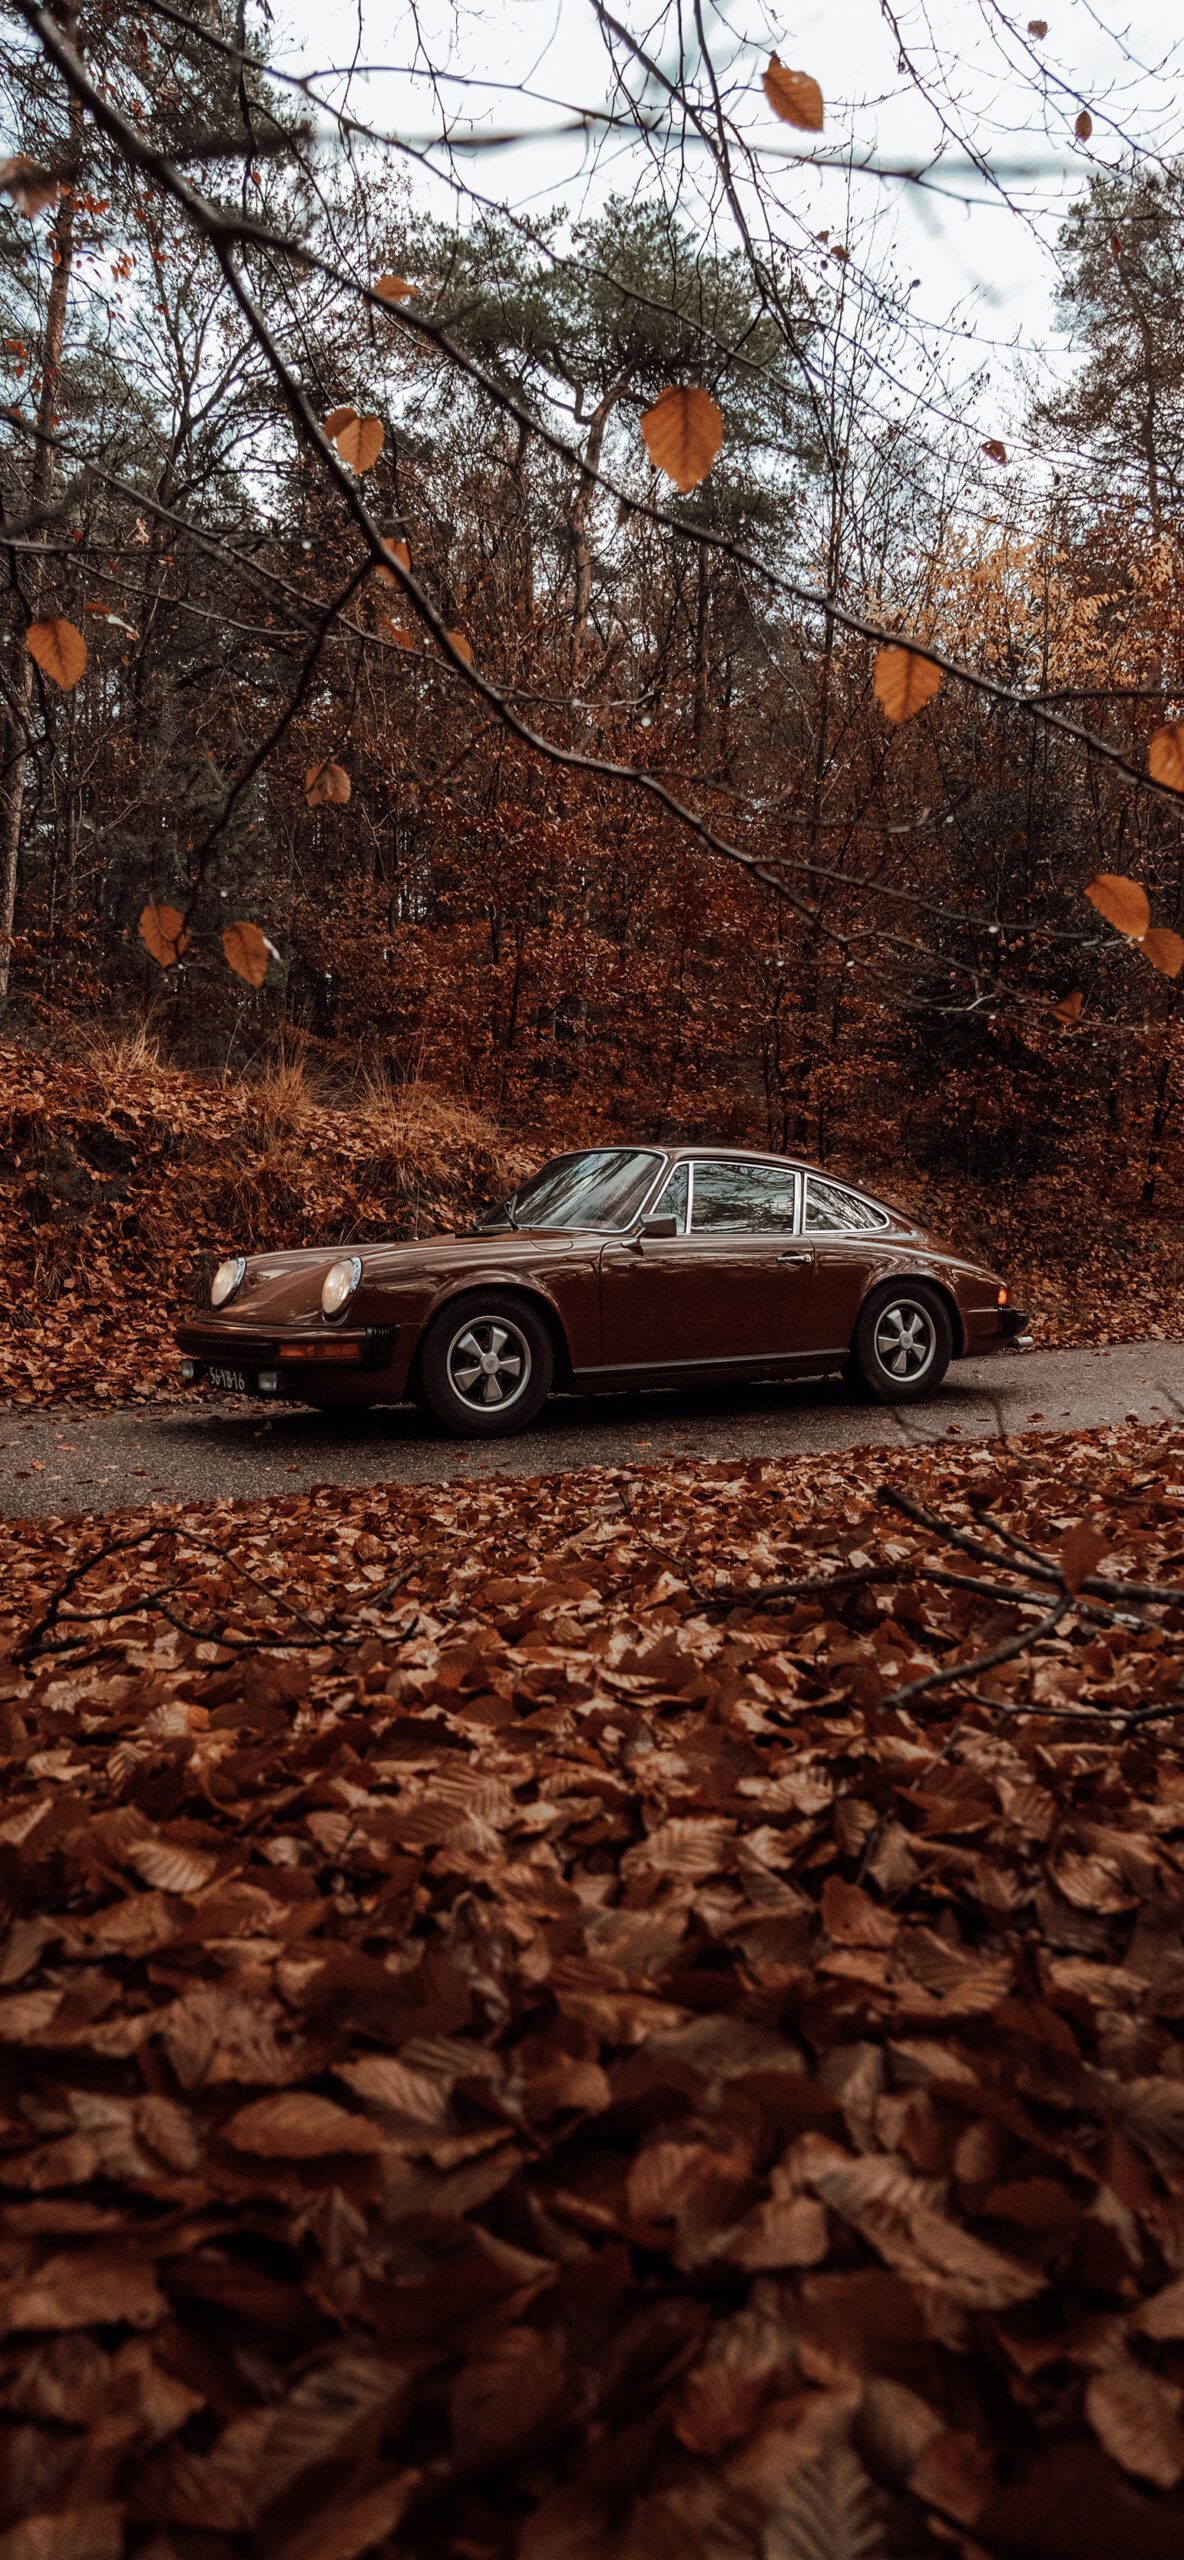 1080x2340, Porsche 911, 1967, 911, classic car, vintage car, autumn, leaves, forest, trees - Cars